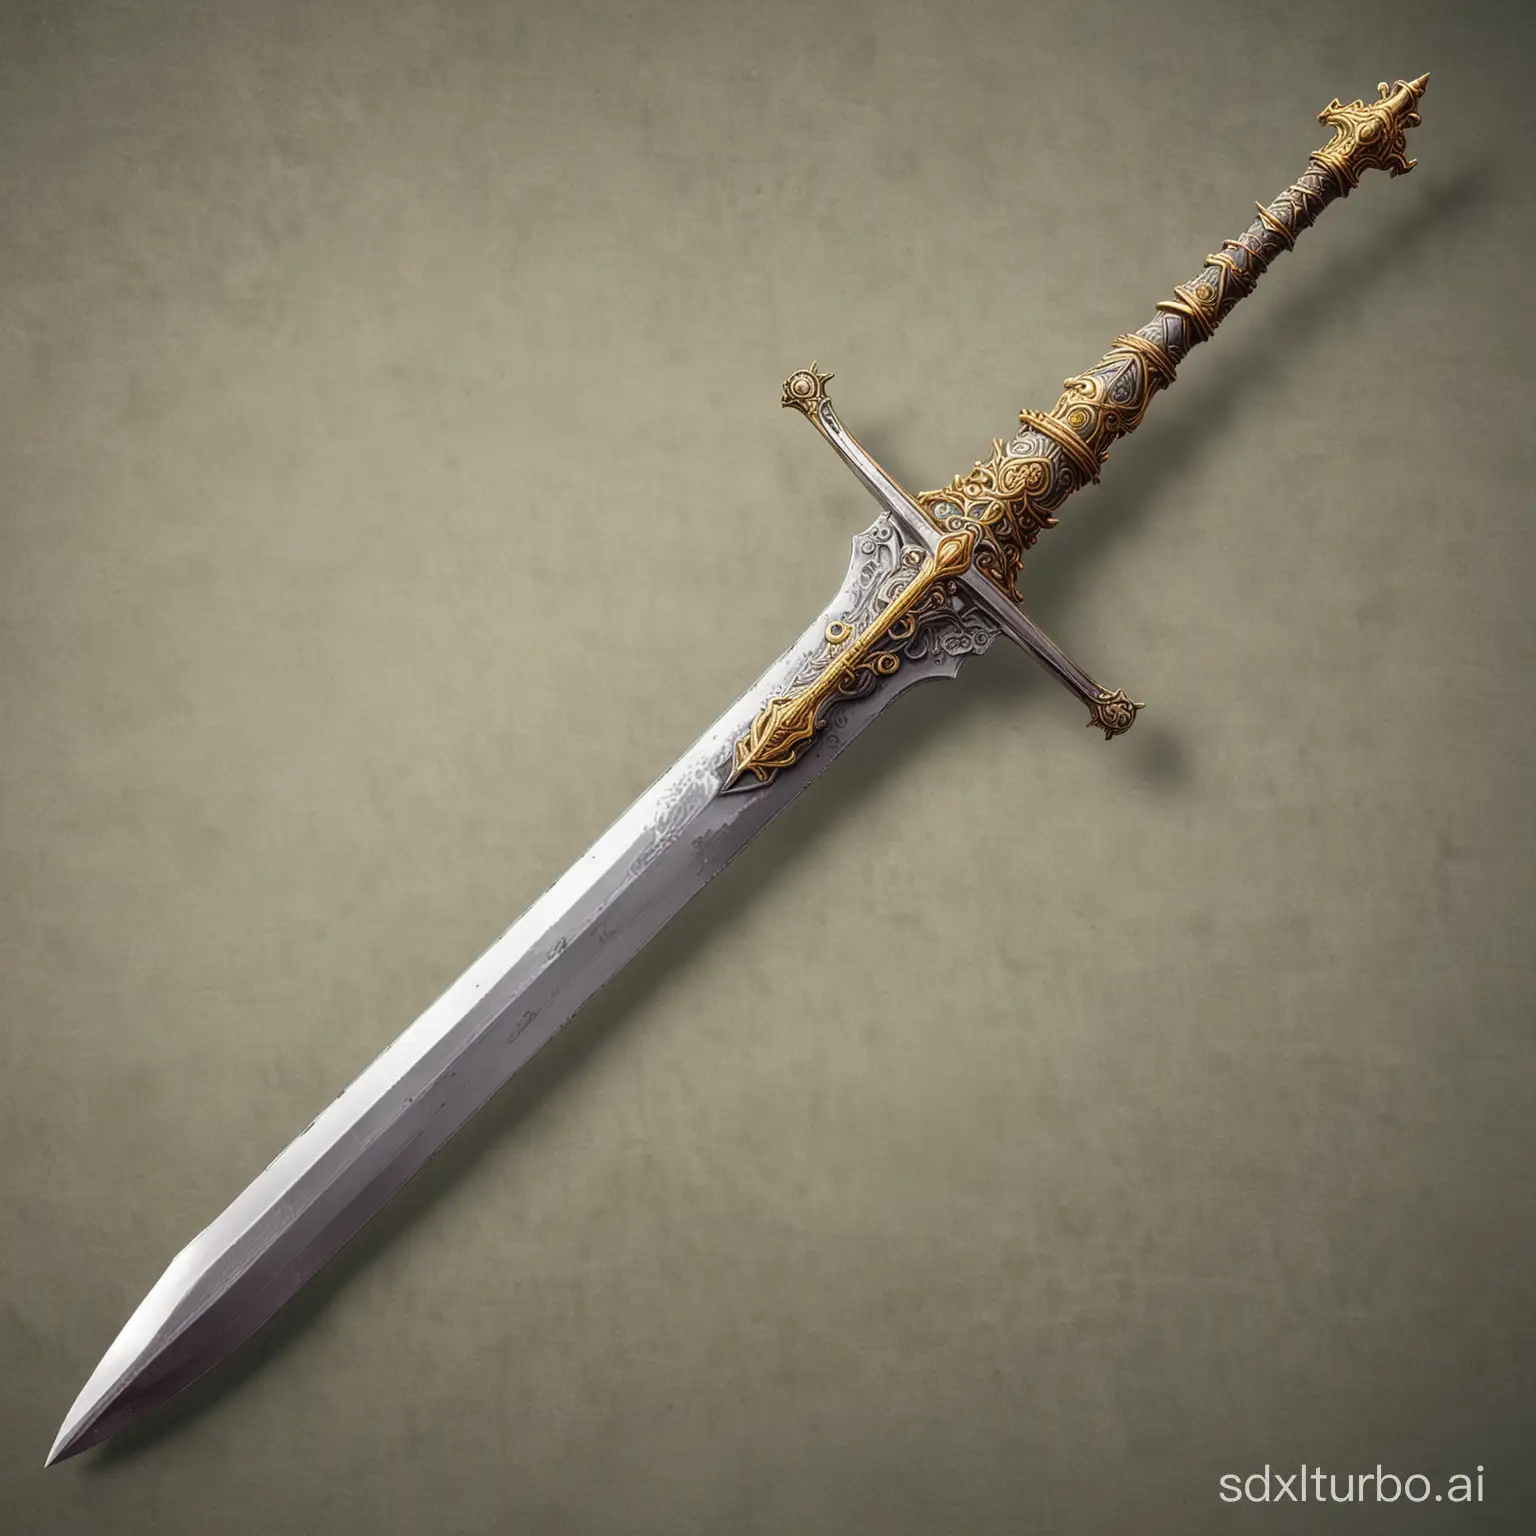  иллюстраций меча без человека для детской  игры "Avventura grafica". 
Excalibur: Легендарный меч, У Экскалибура есть особые свойства и он может стать мощным оружием 